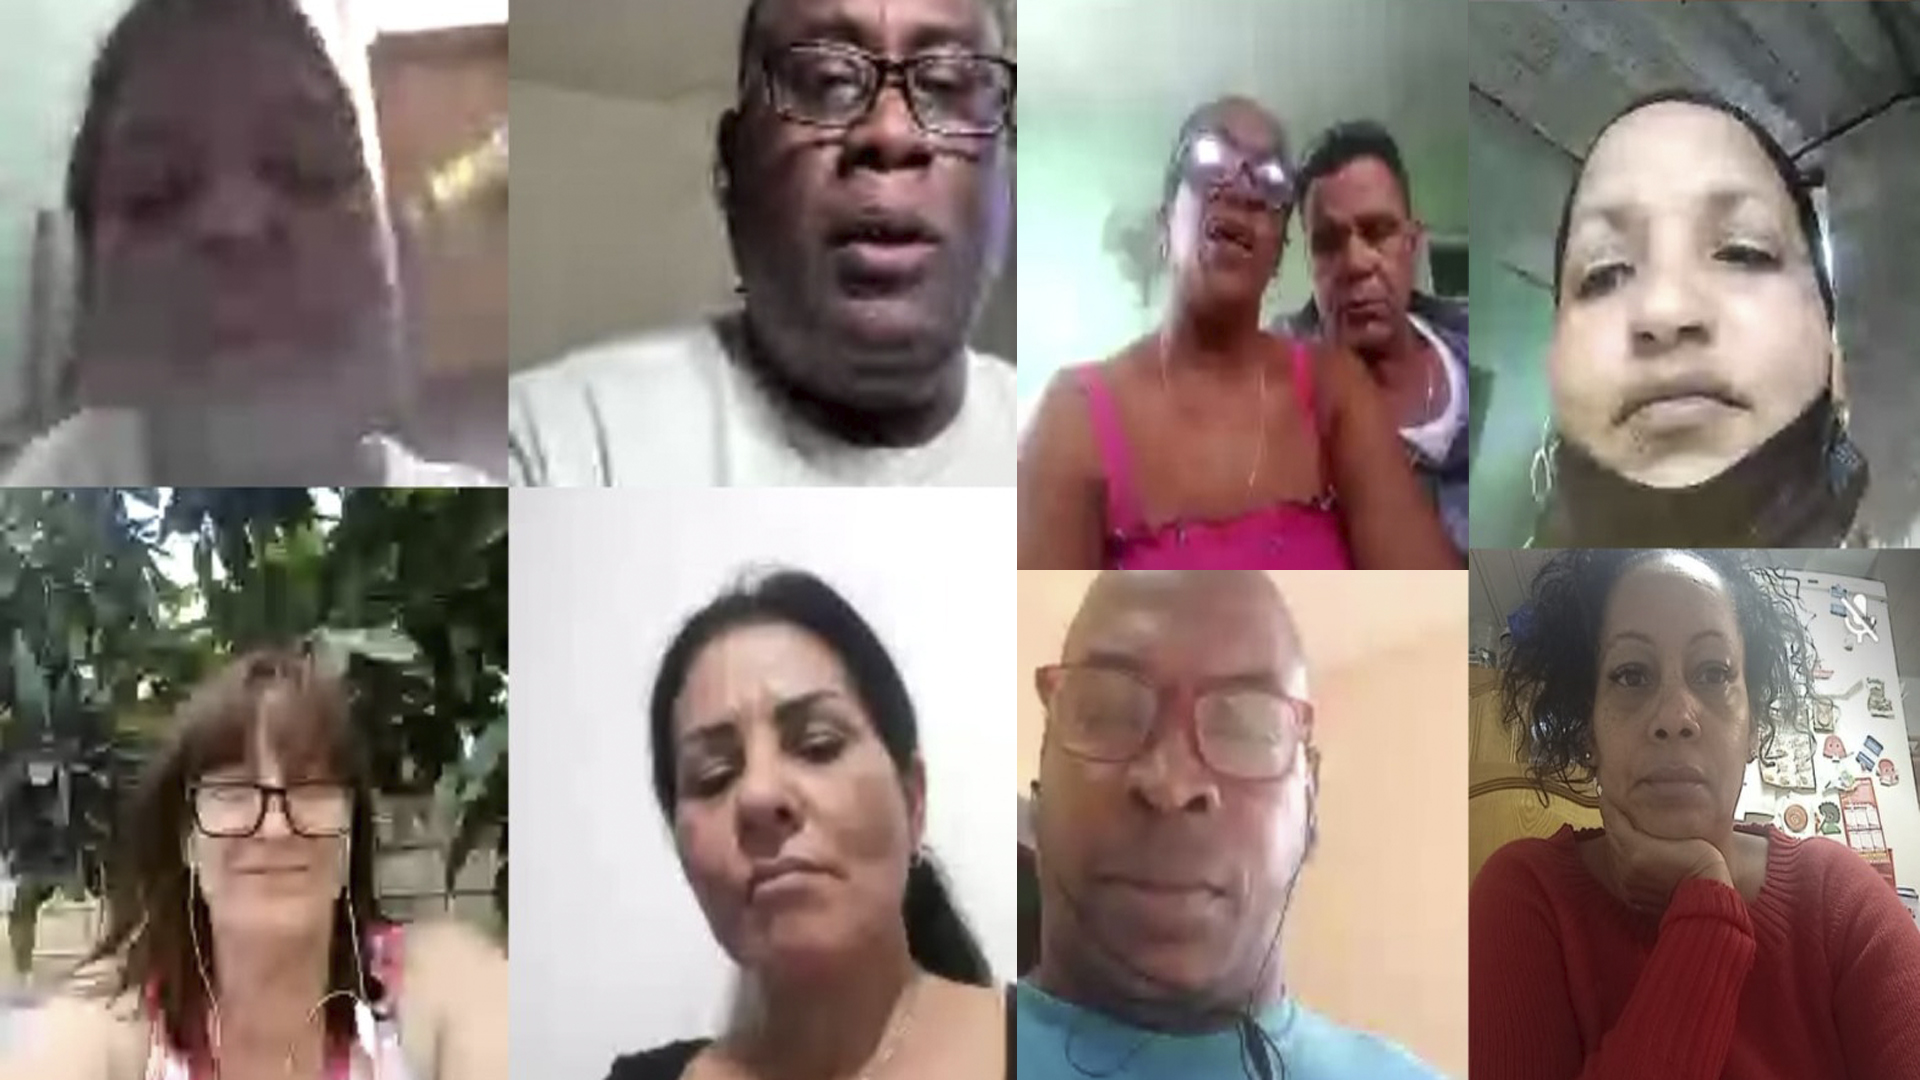 Crean asociación por la libertad de los presos políticos en Cuba